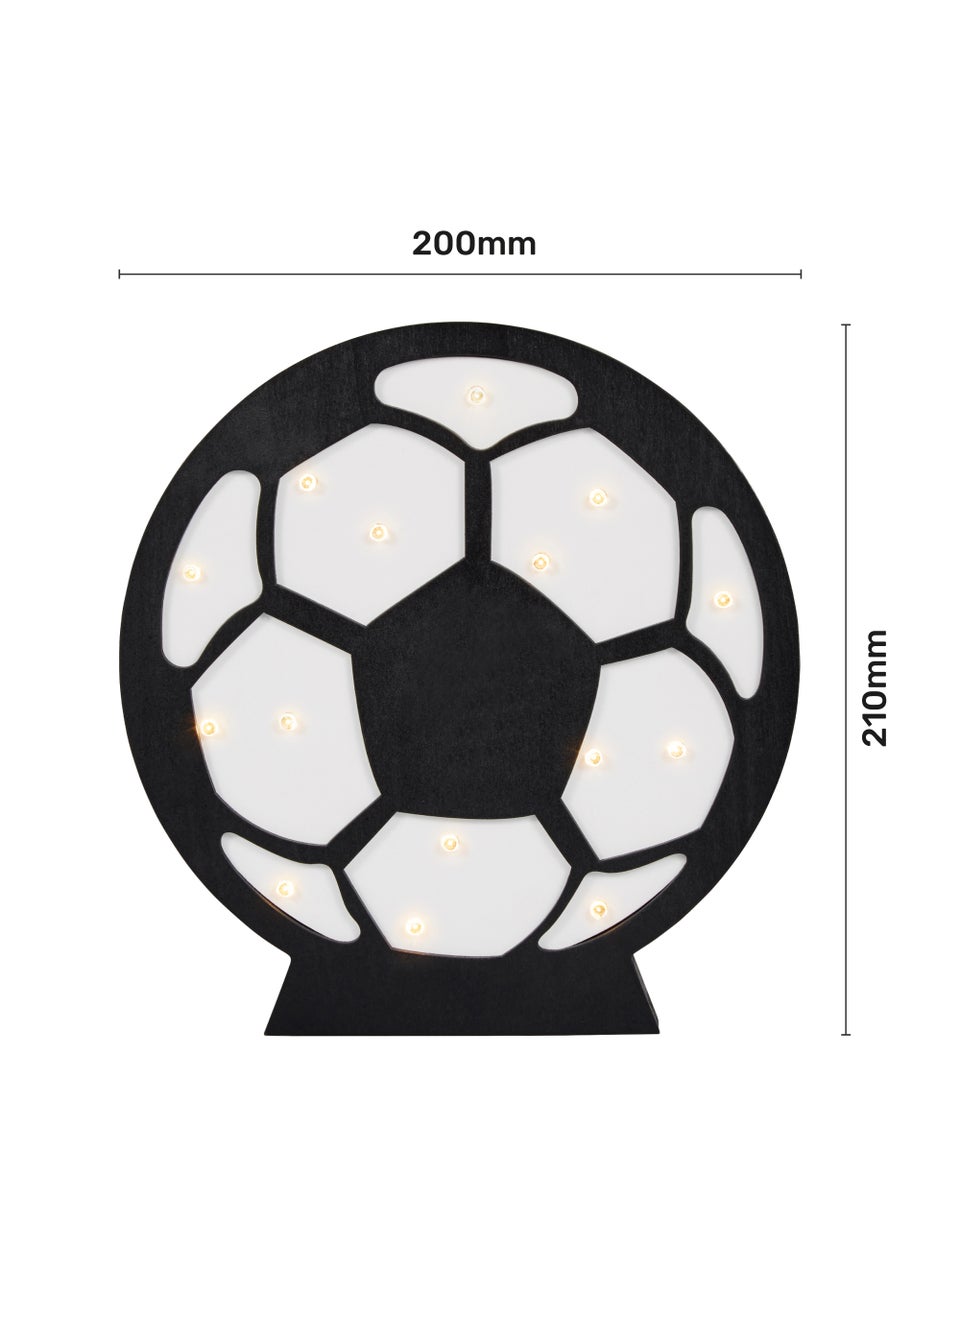 Glow Football Light (21cm x 20cm x 3cm)